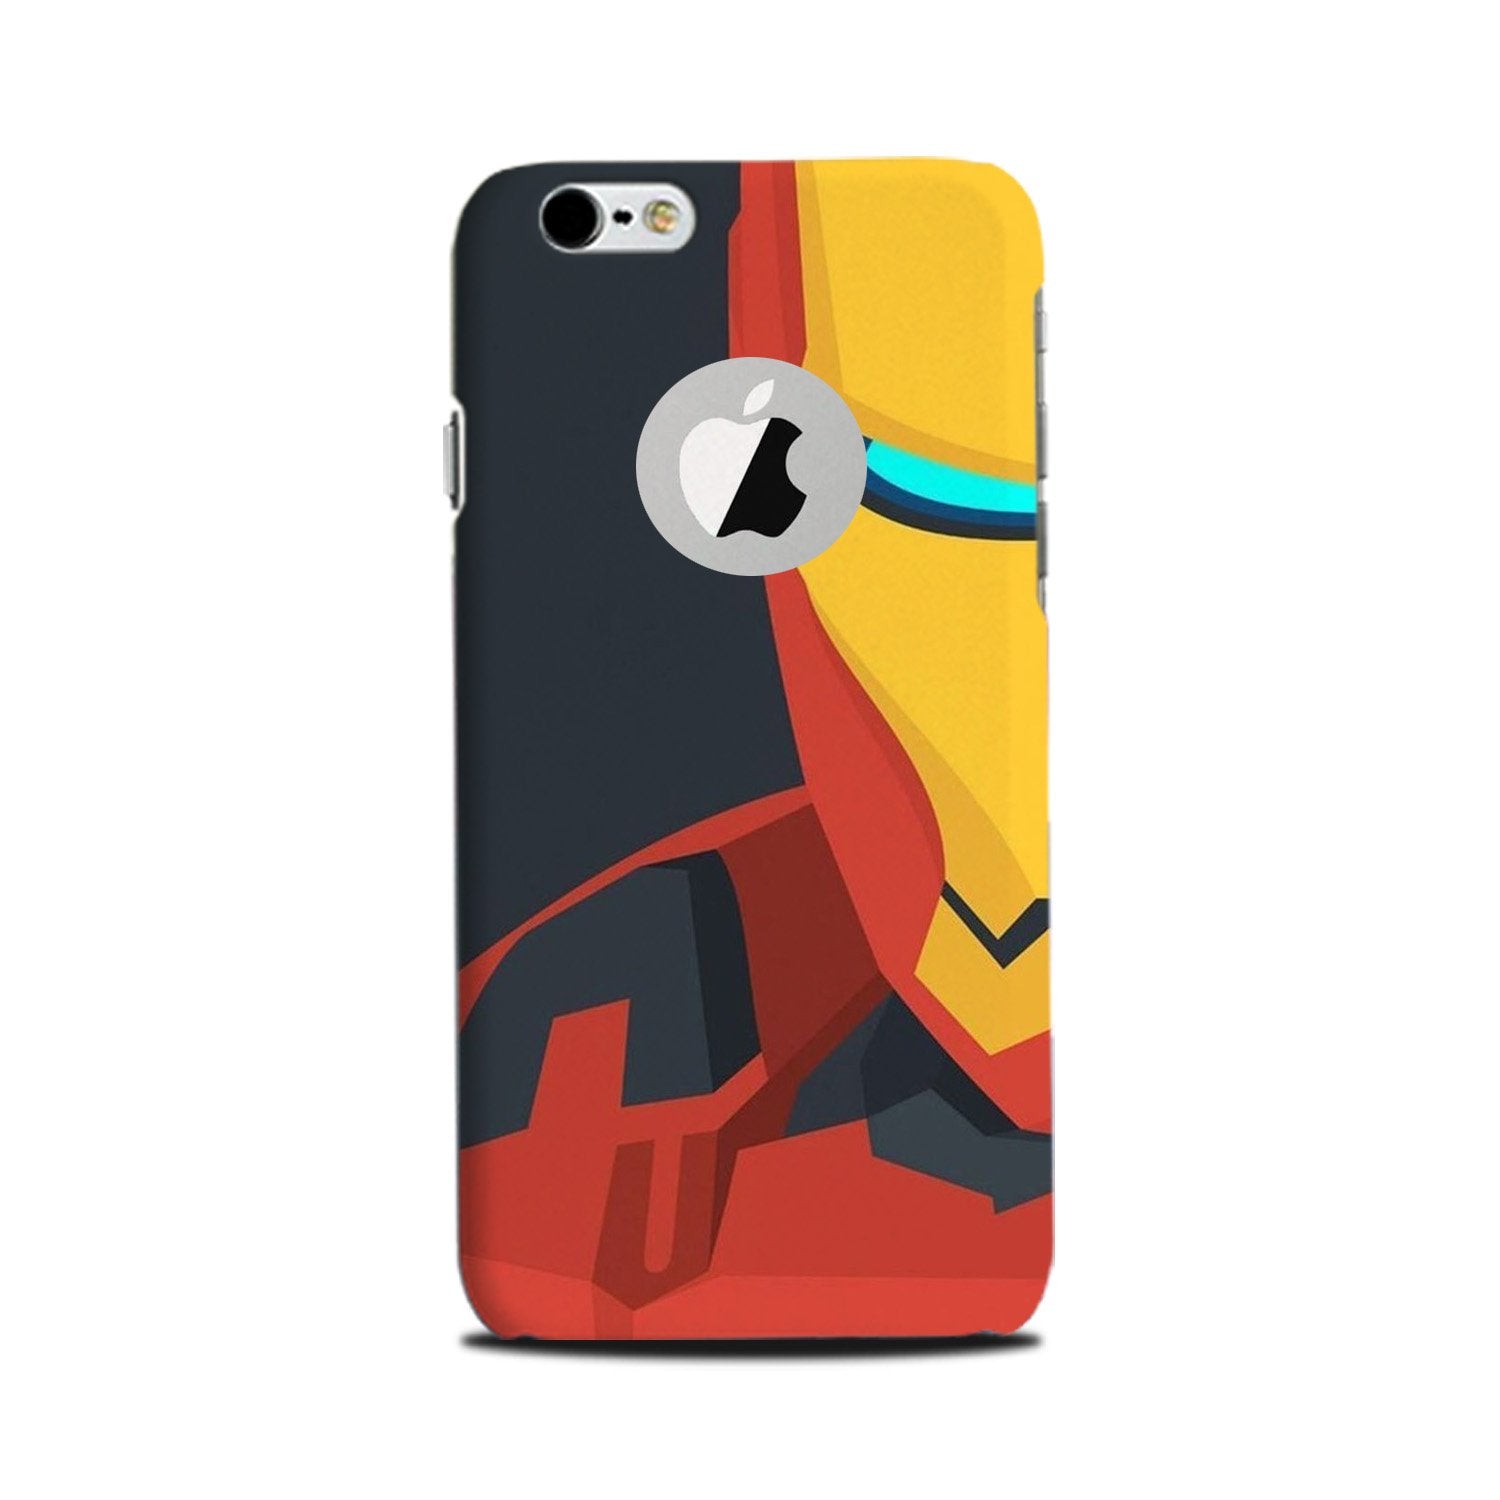 Iron Man Superhero Case for iPhone 6 Plus / 6s Plus logo cut (Design - 120)